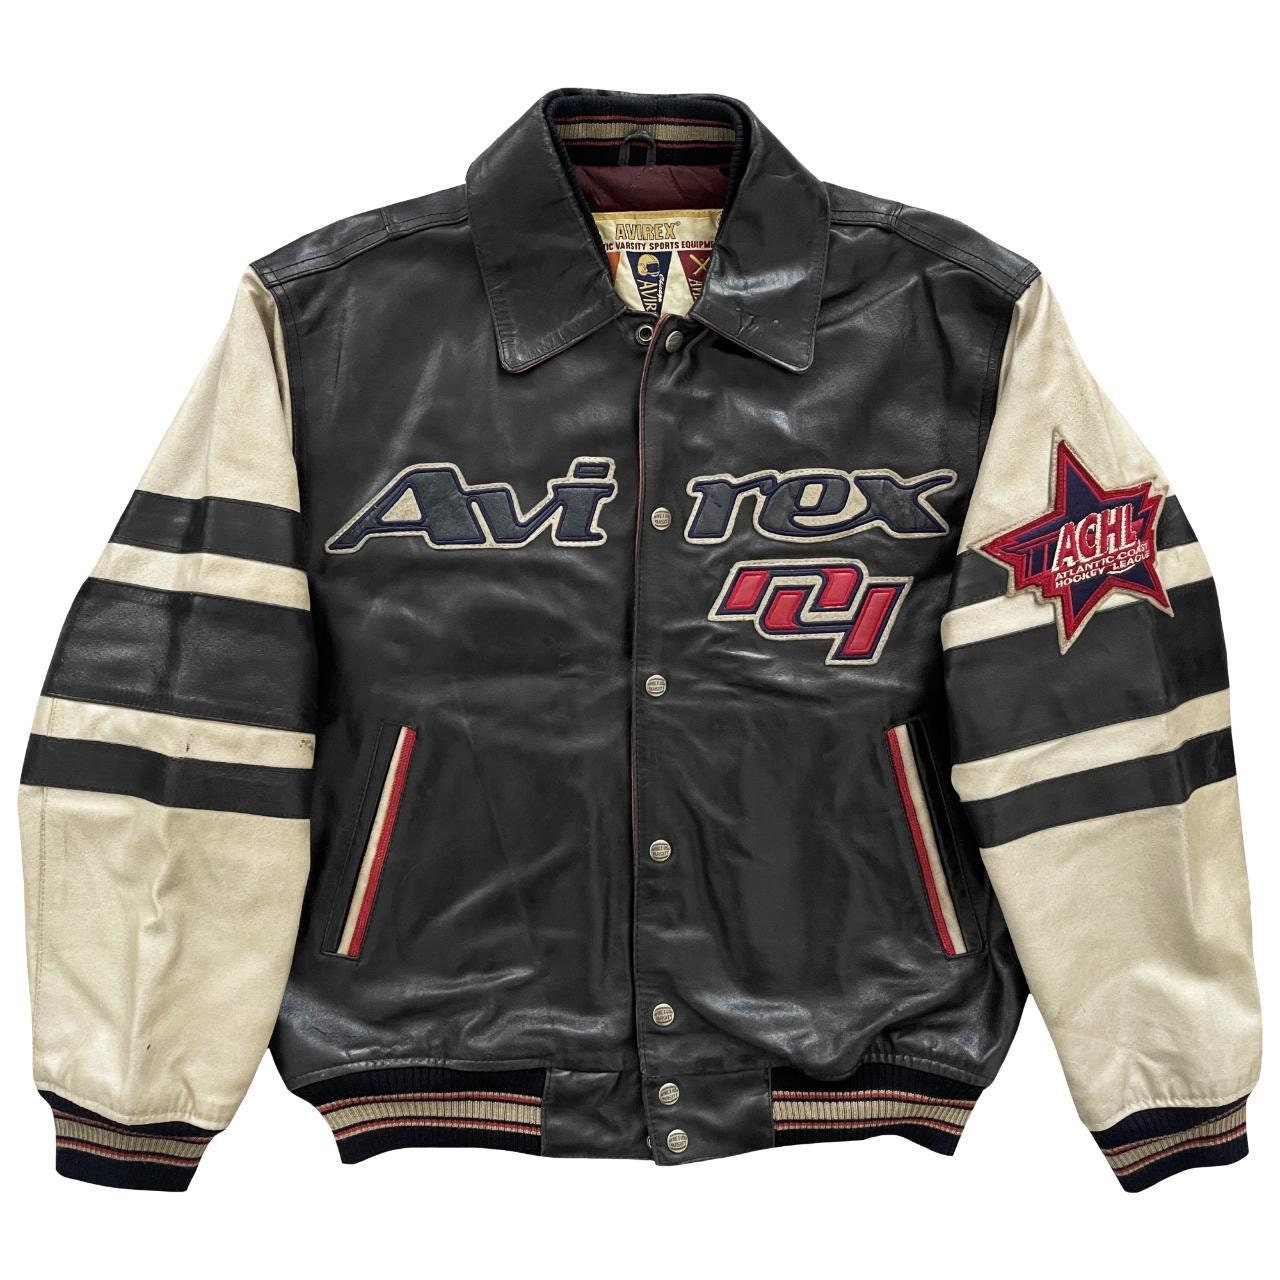 RARE Rolling Stones Varsity jacket size small medium Large XL 2XL 3XL